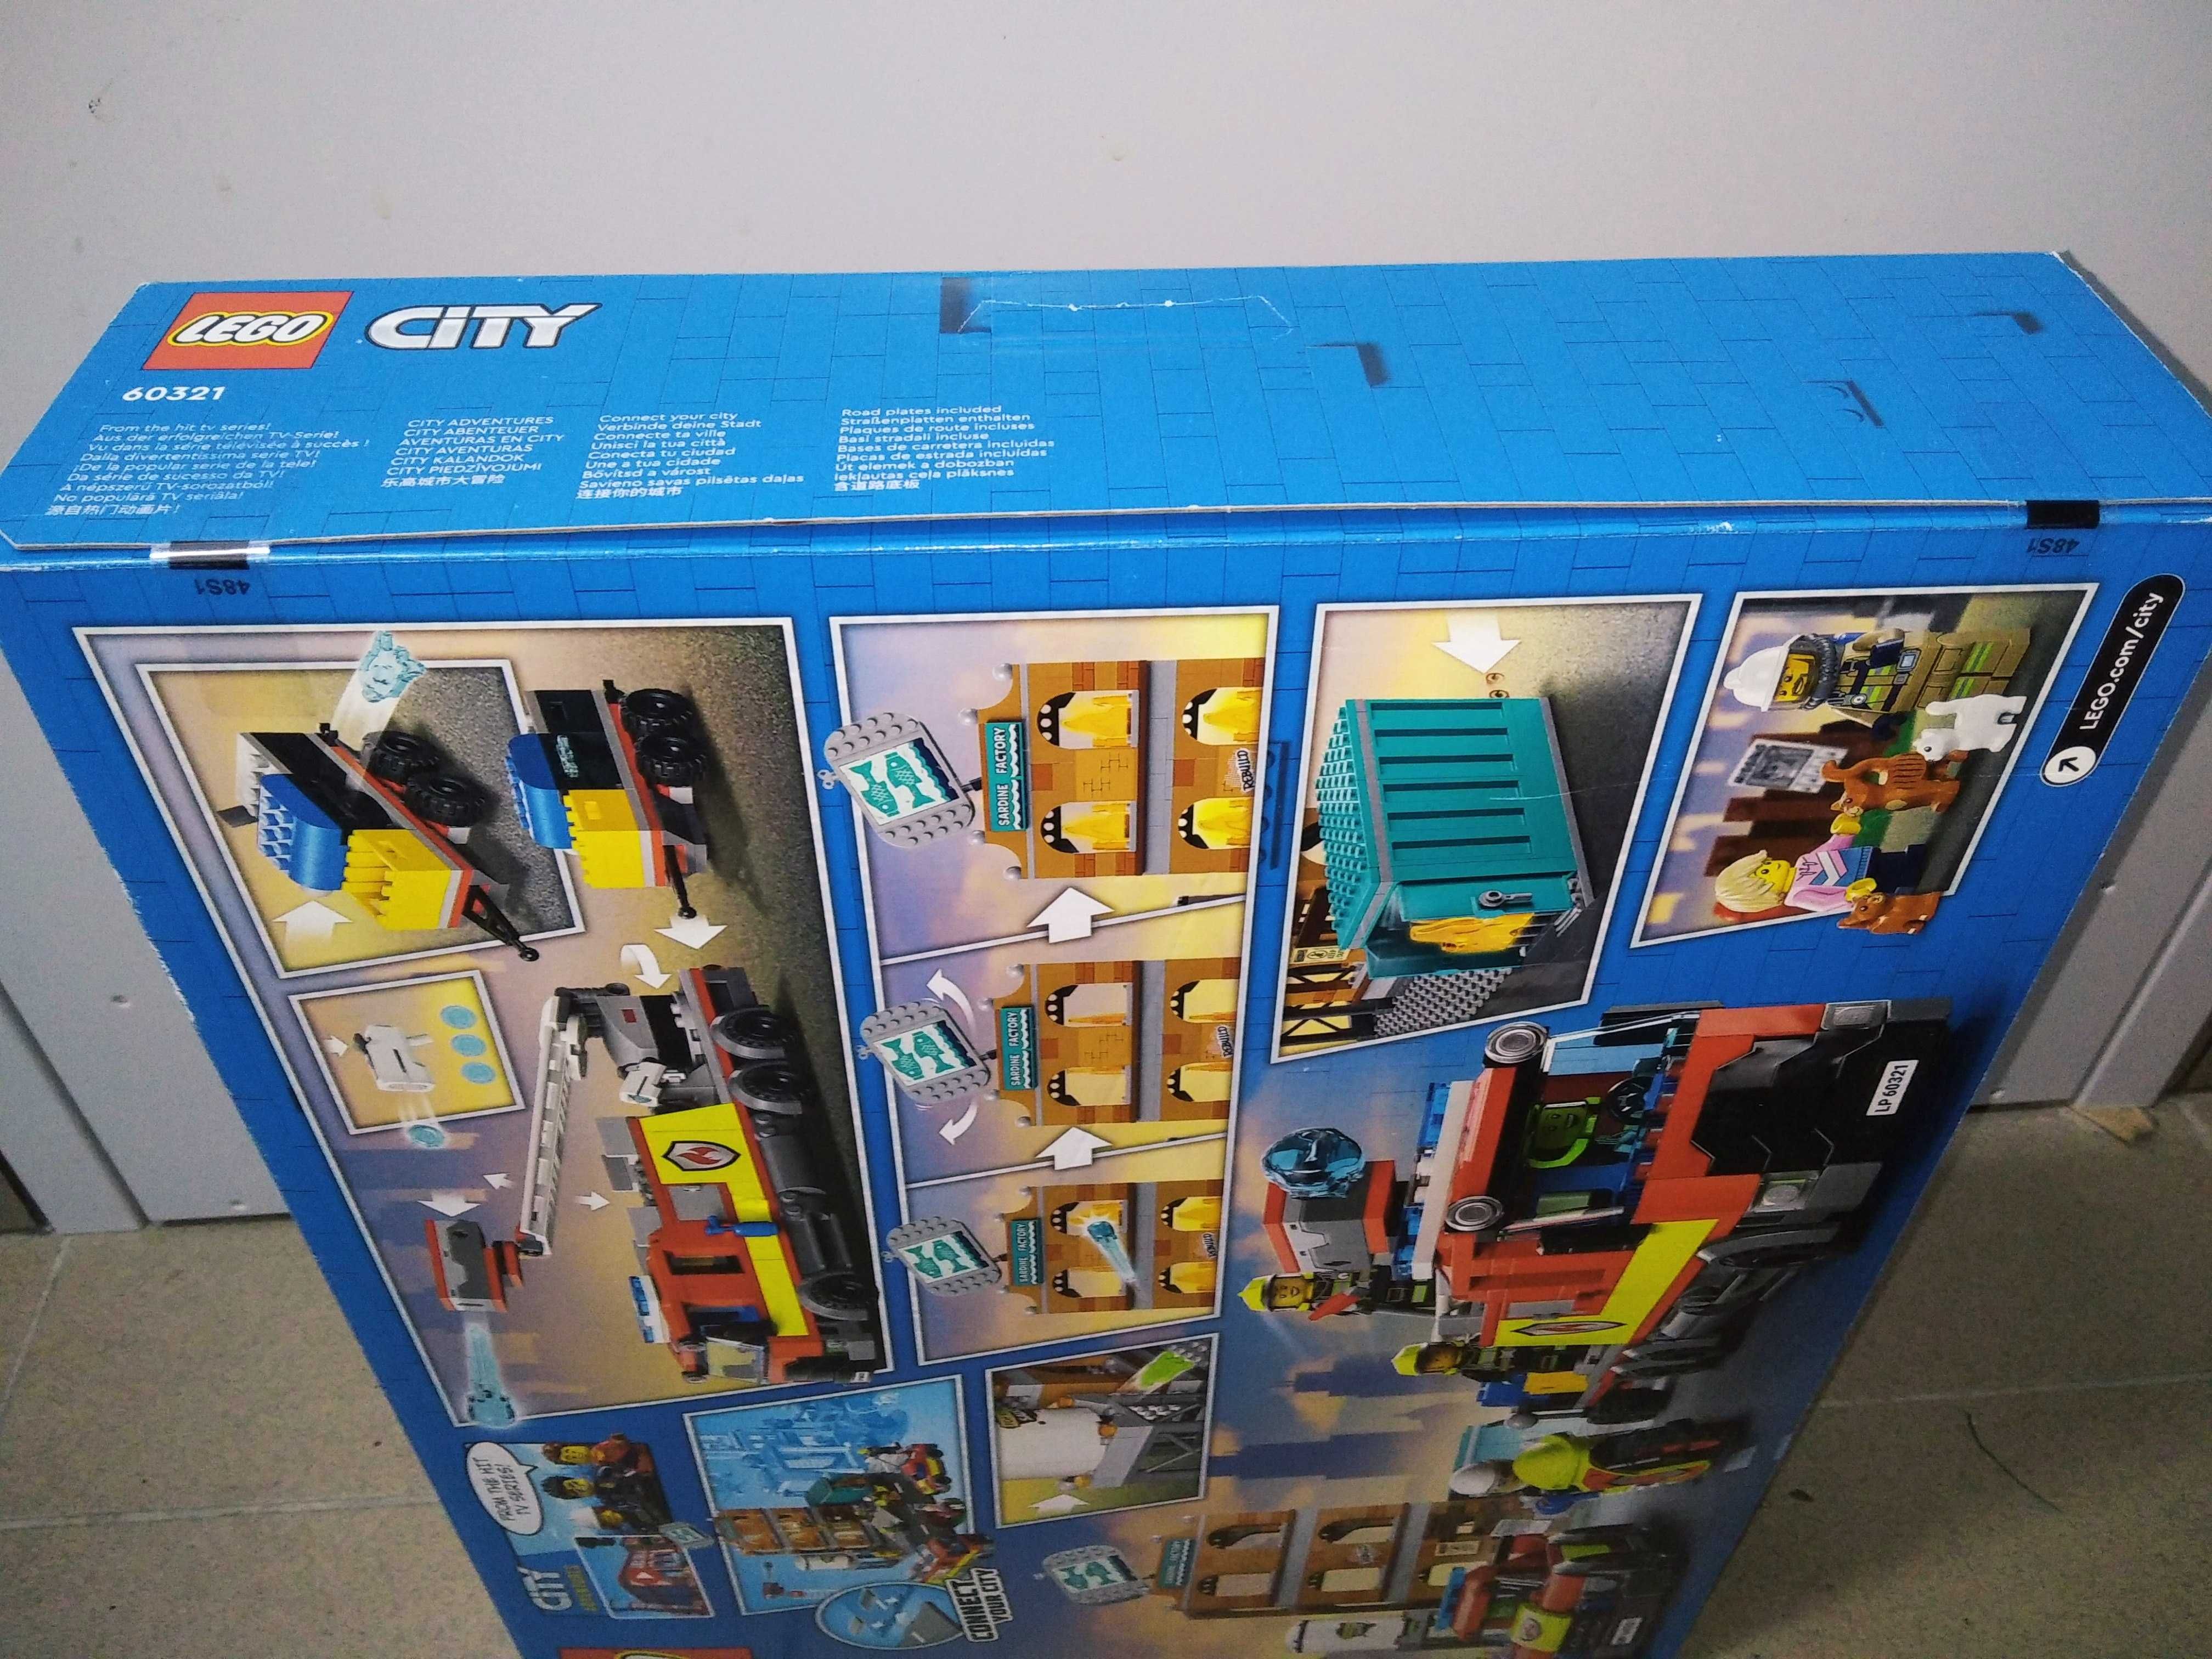 Lego City 60321 Straż Pożarna Nowa